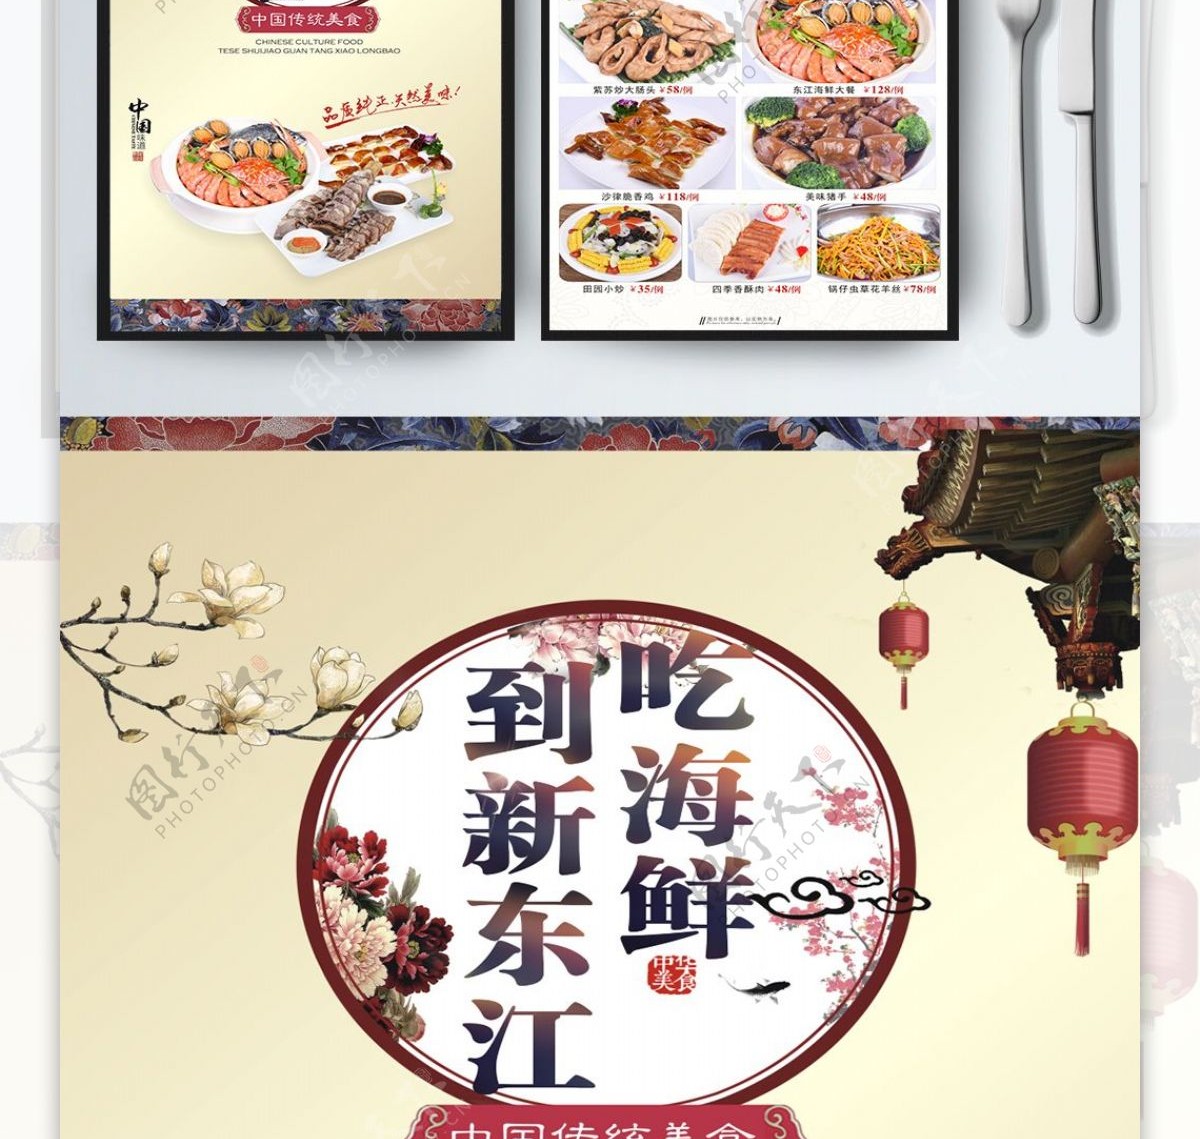 菜单菜谱菜牌海鲜中国风餐厅饭店酒店